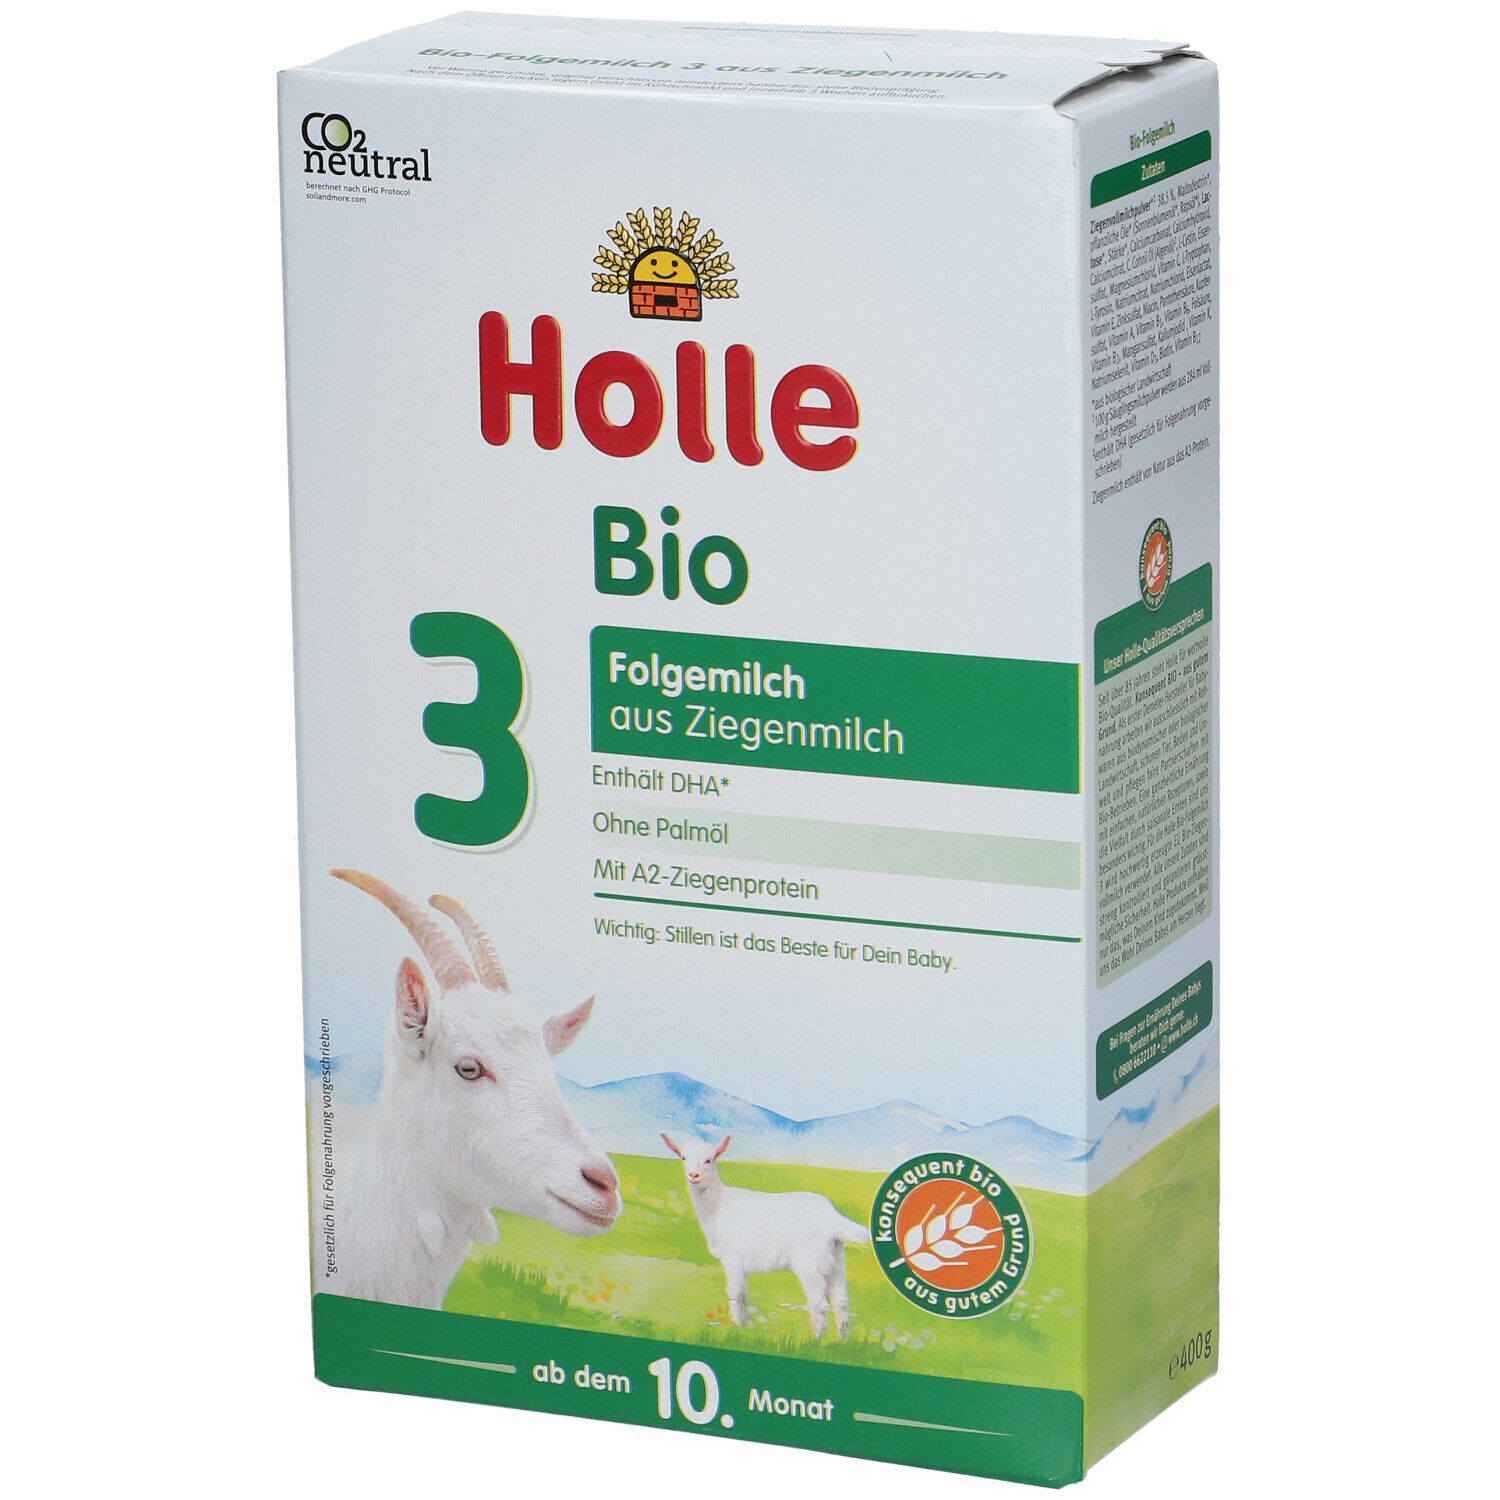 Holle Bio 3 Folgemilch auf Ziegenmilchbasis ab dem 10. Monat